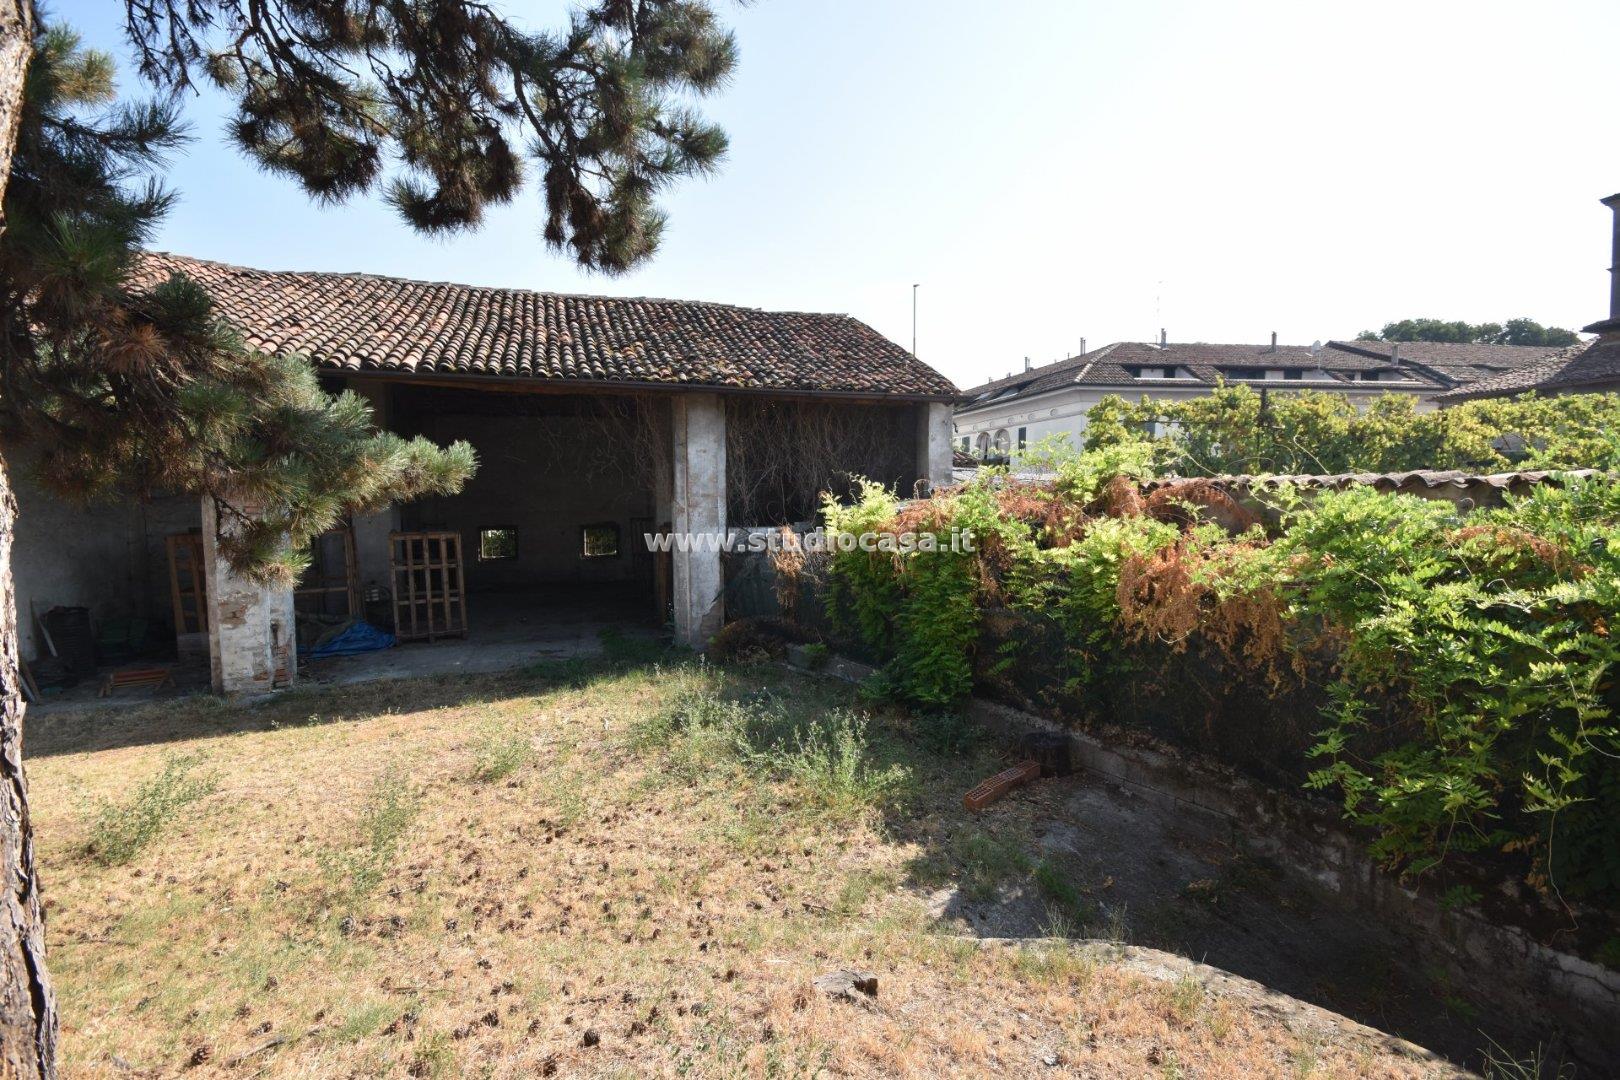 Villa Unifamiliare in vendita a Offanengo